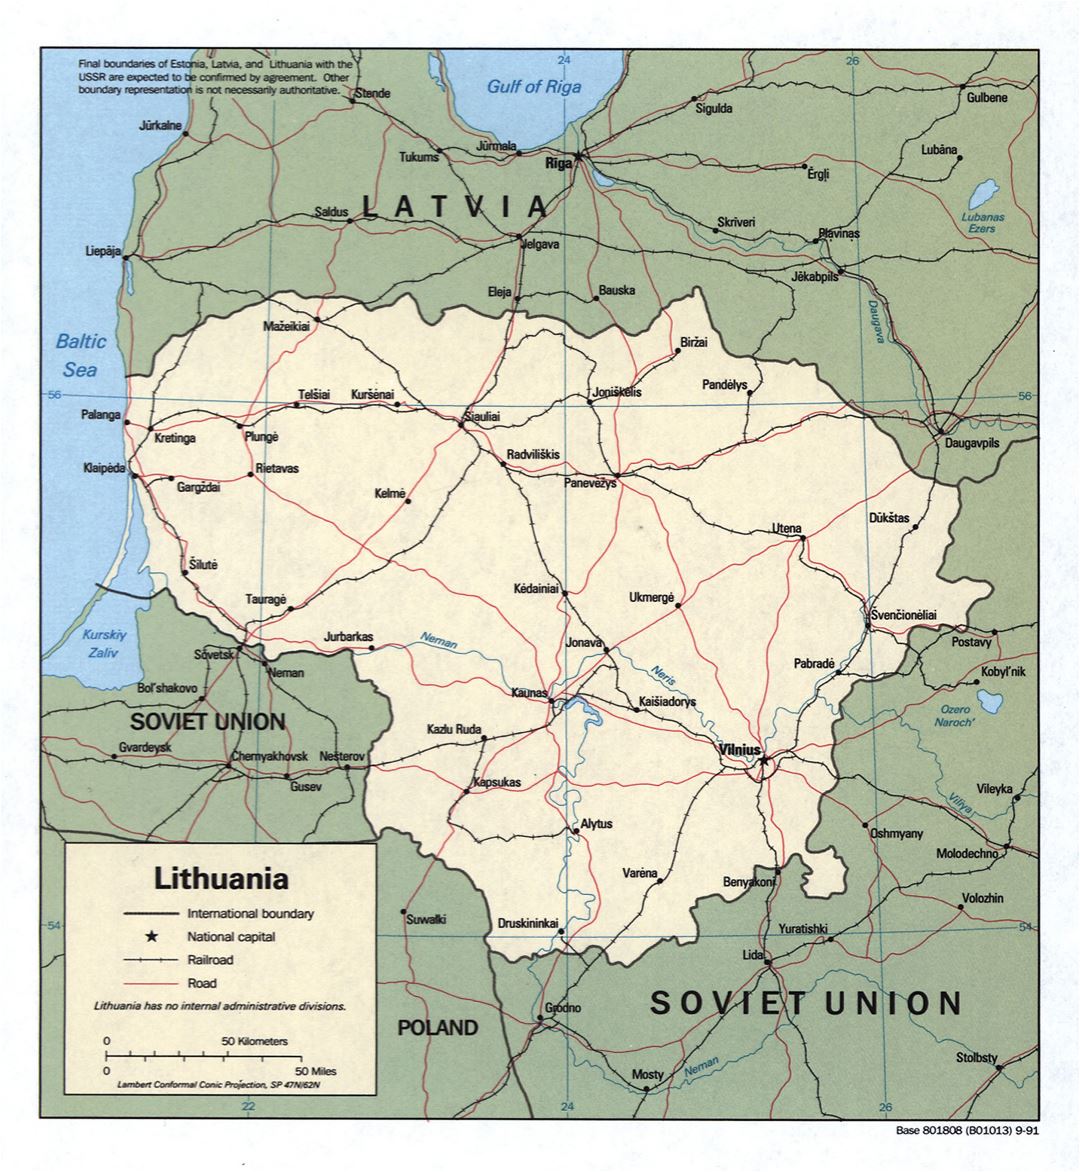 Grande detallado mapa política de Lituania con carreteras, ferrocarriles y principales ciudades - 1991